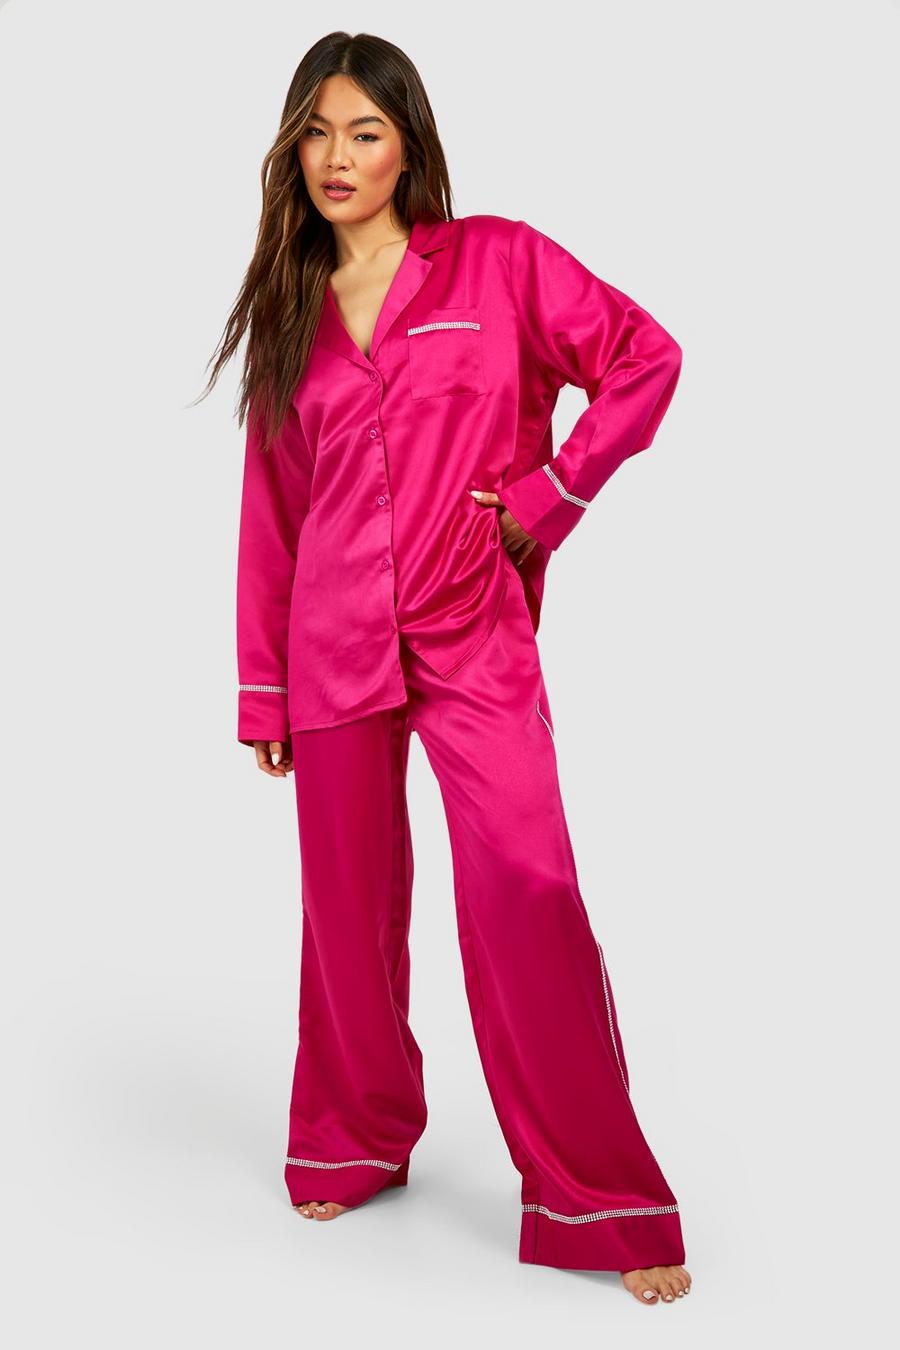 Premium Hemd mit Strass-Detail & Hose, Hot pink